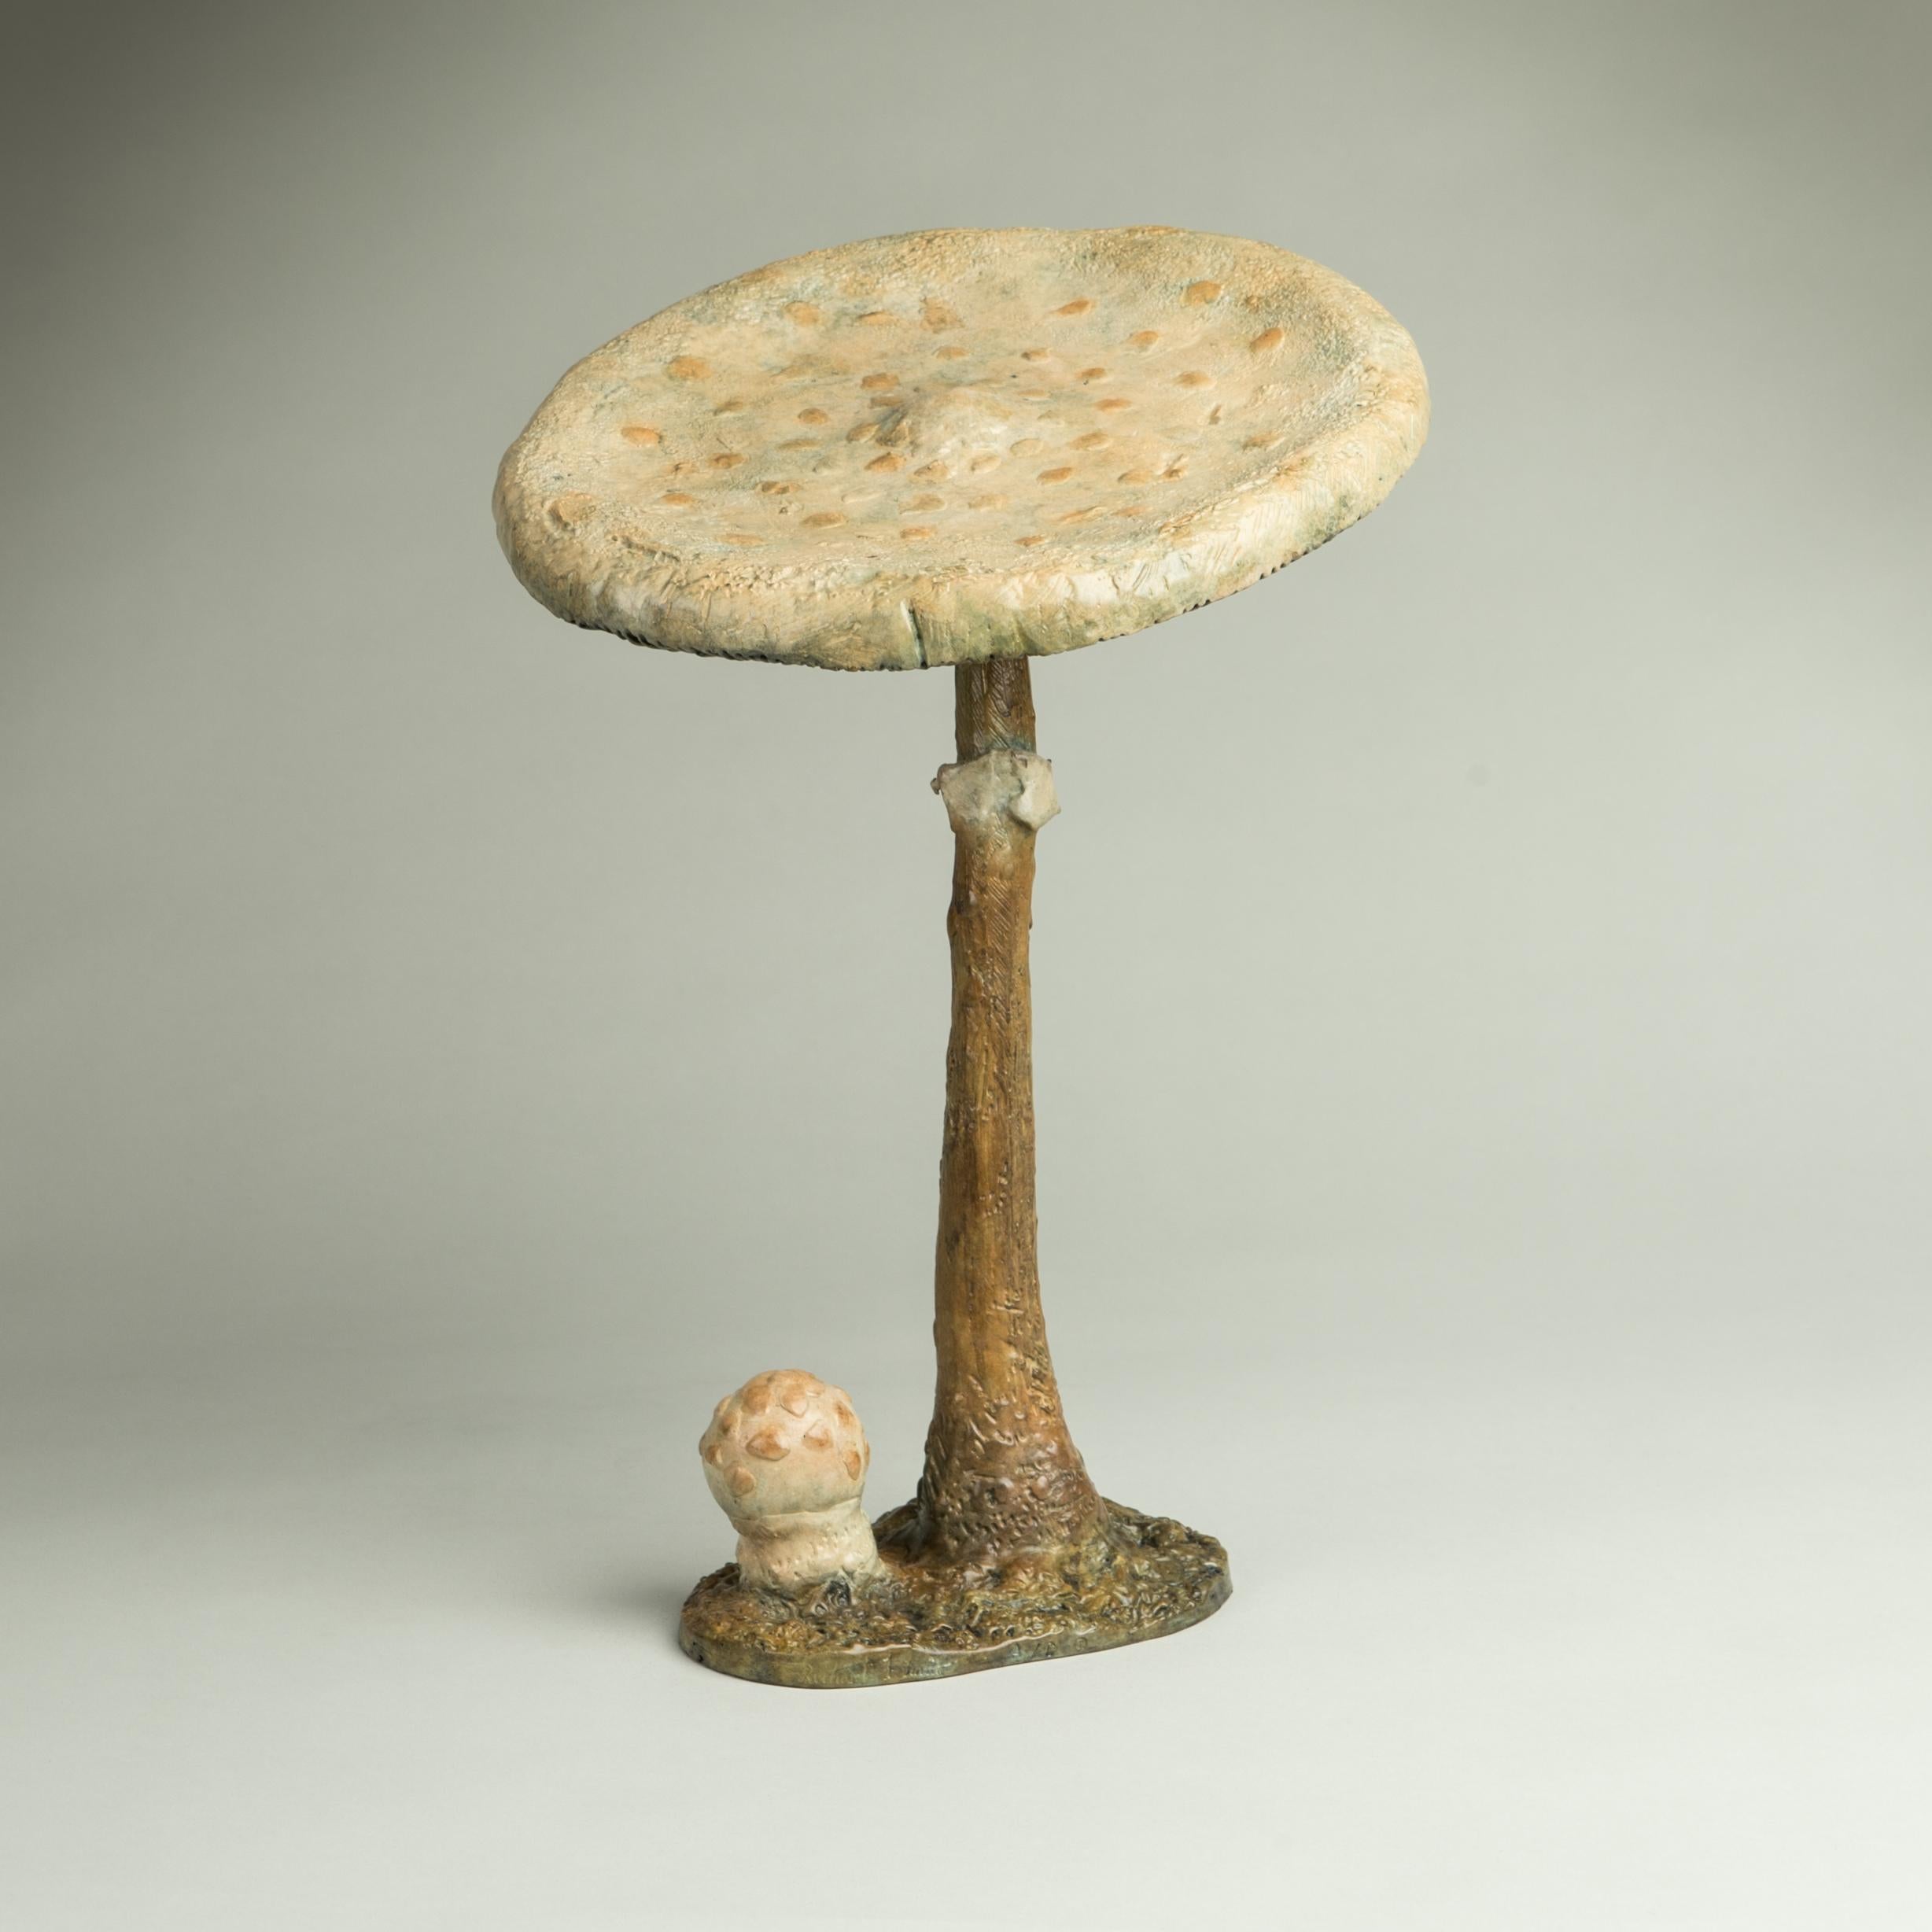 Richard Smith Still-Life Sculpture – 'Parasol Mushroom' Zeitgenössische Bronzeskulptur eines Pilzes, Wildlife